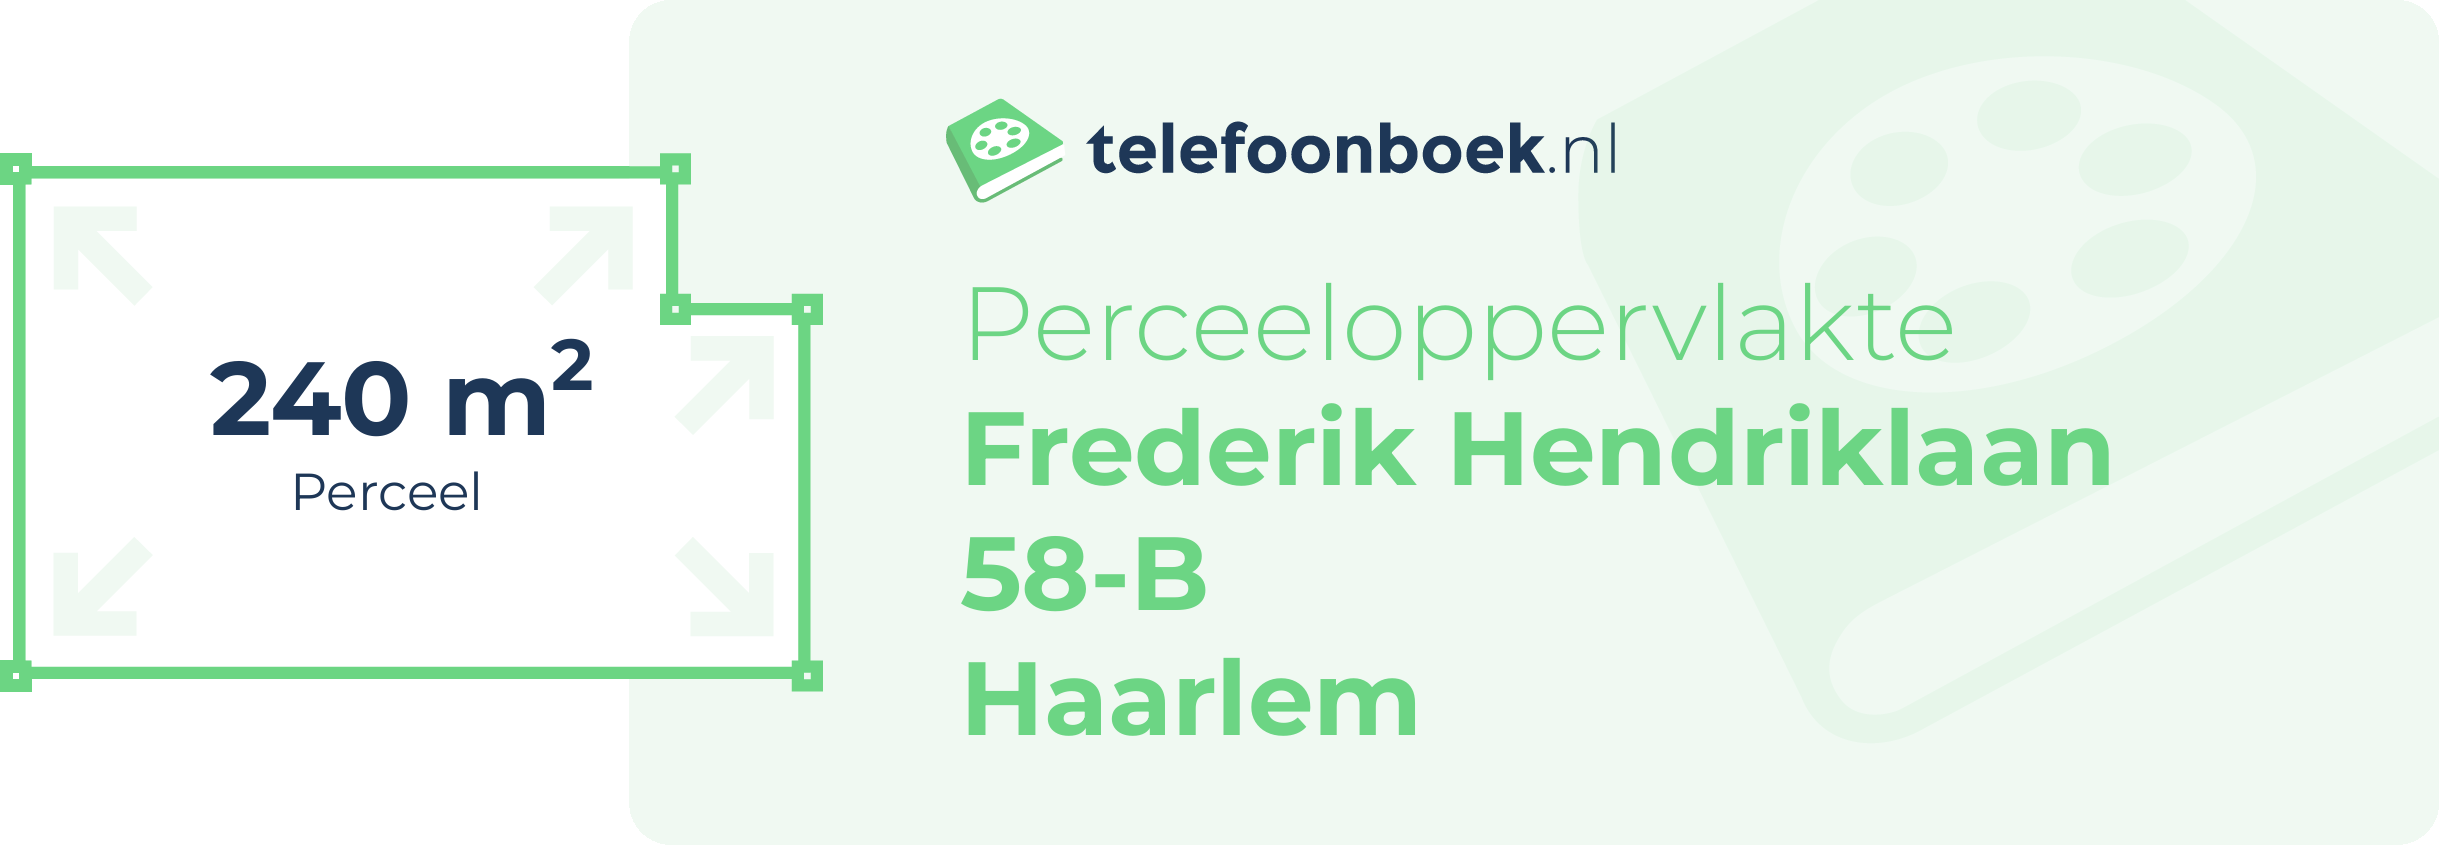 Perceeloppervlakte Frederik Hendriklaan 58-B Haarlem